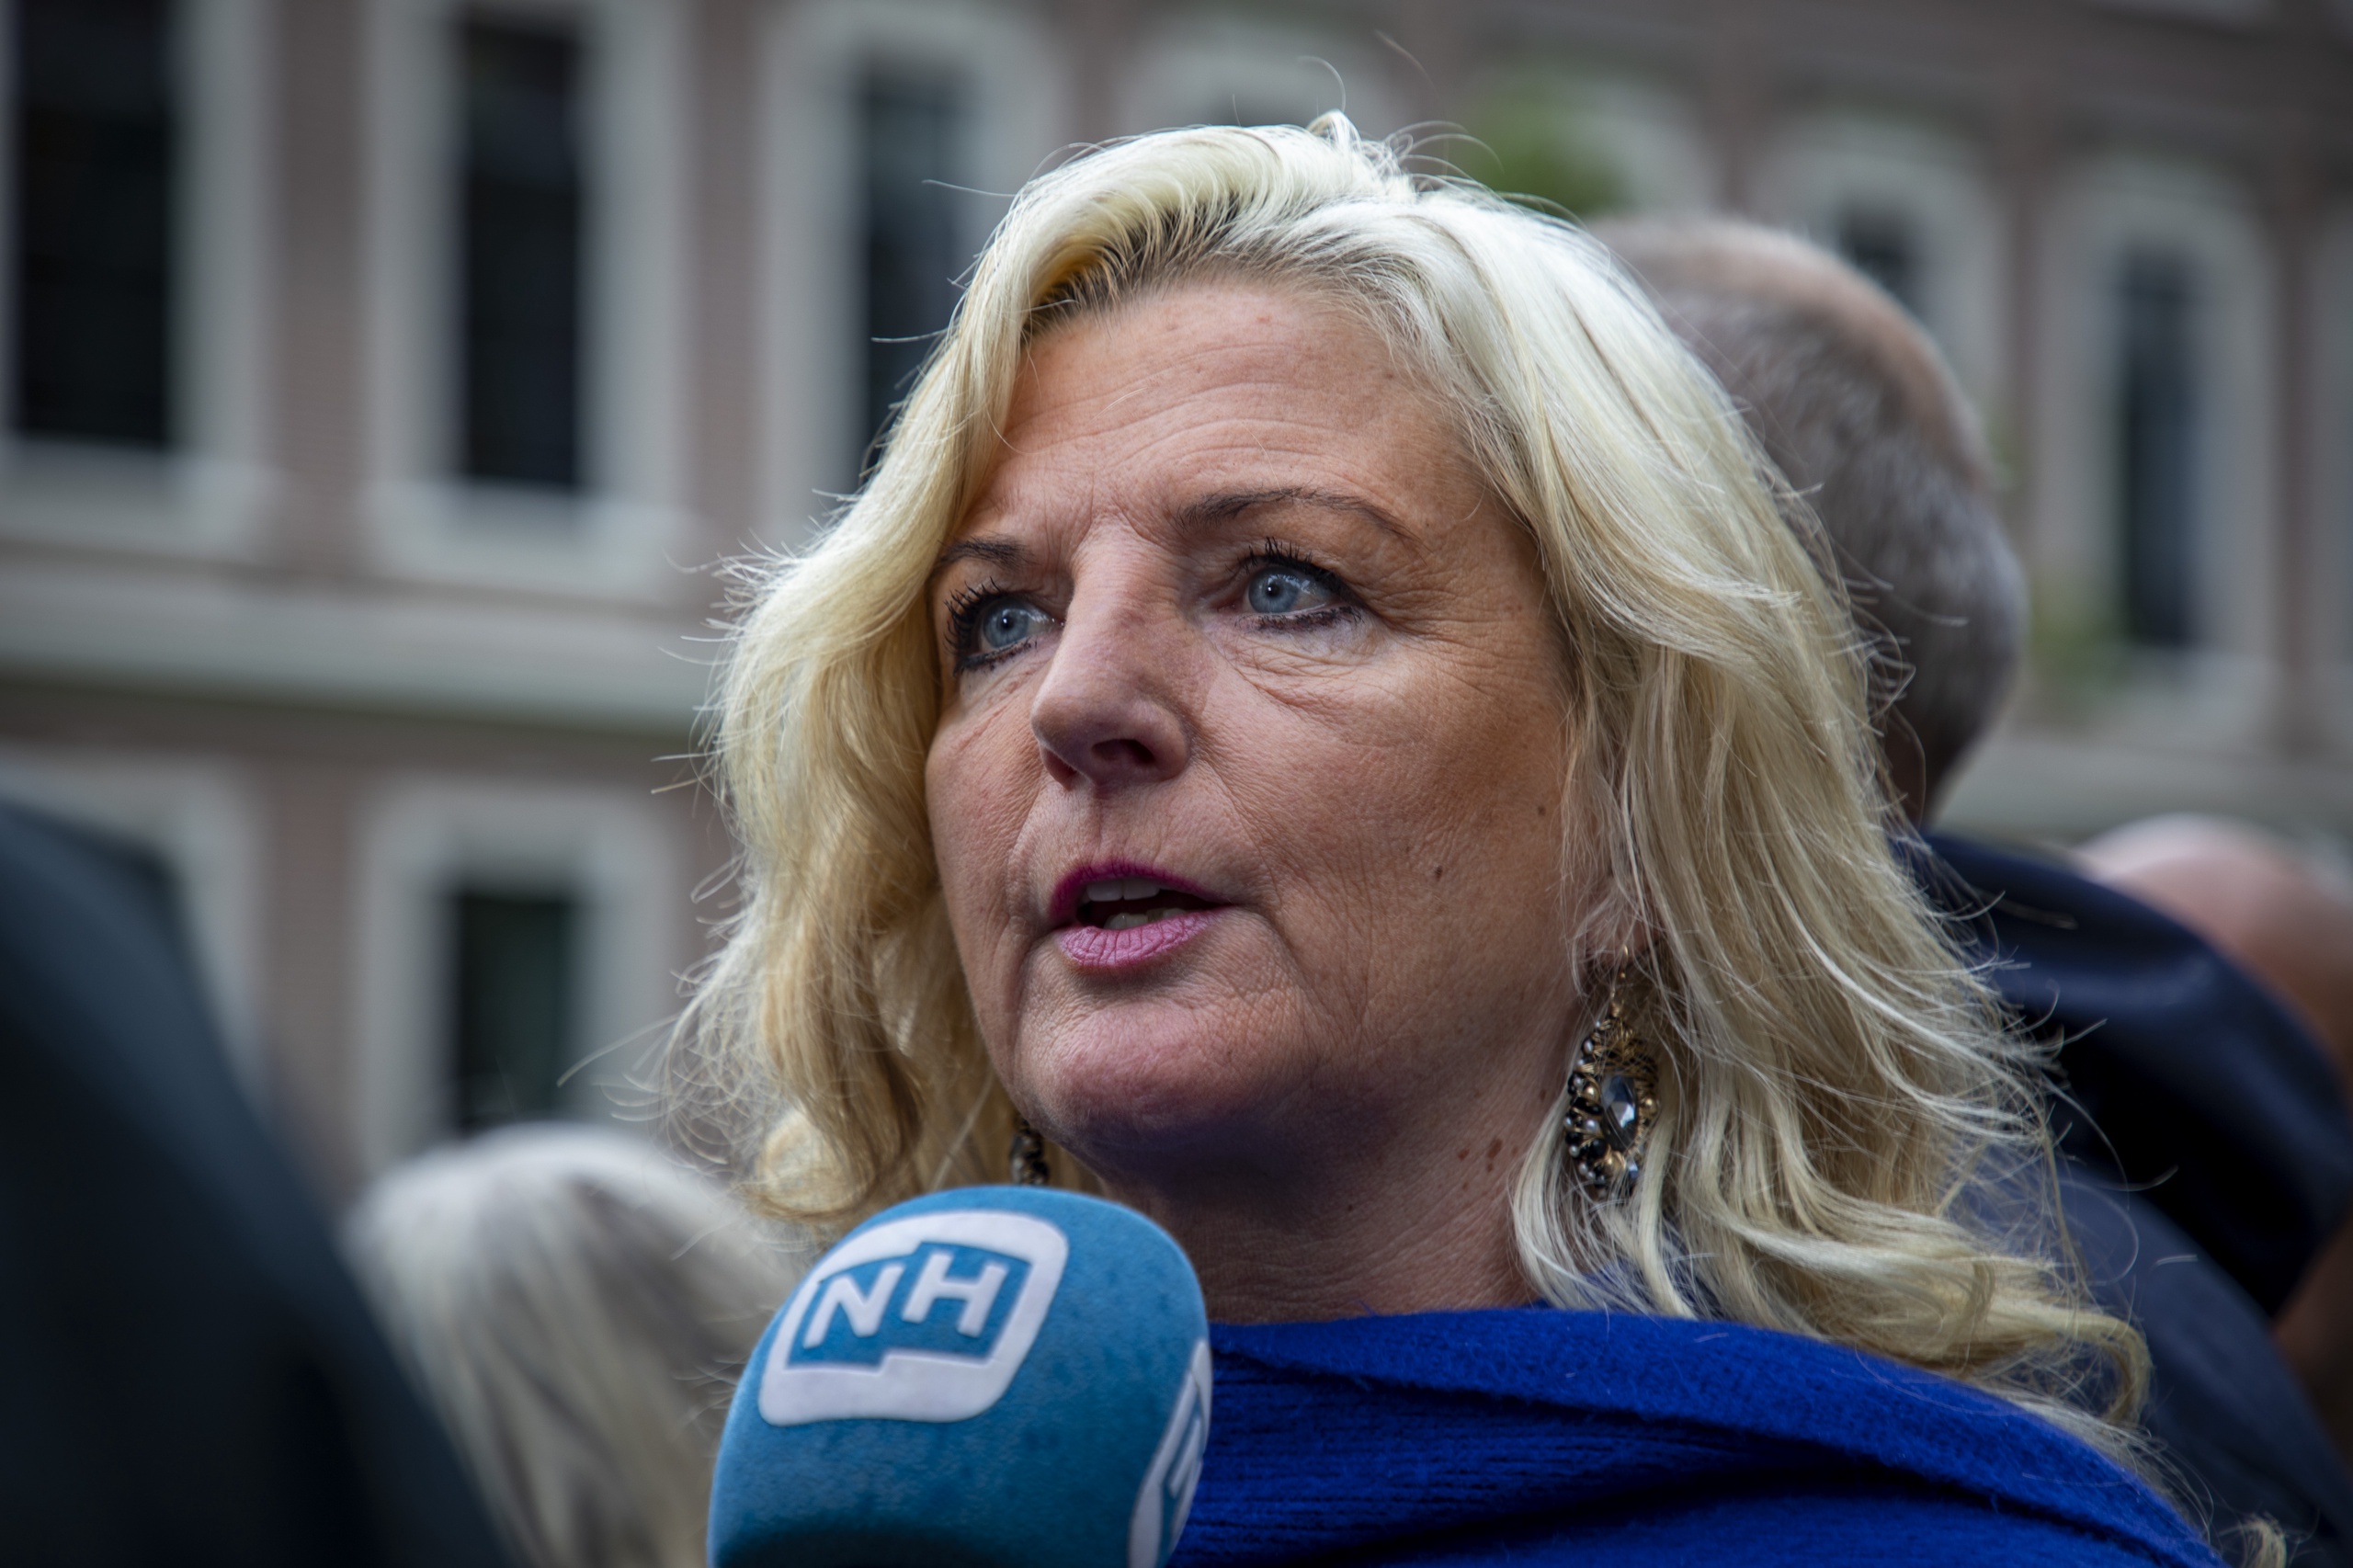 Bijna één op de zes provinciebestuurders houdt er een nevenfunctie op na zonder hierover openheid van zaken te geven. Een van hen is de VVD-lijsttrekker in Noord Holland, Esther Rommel.